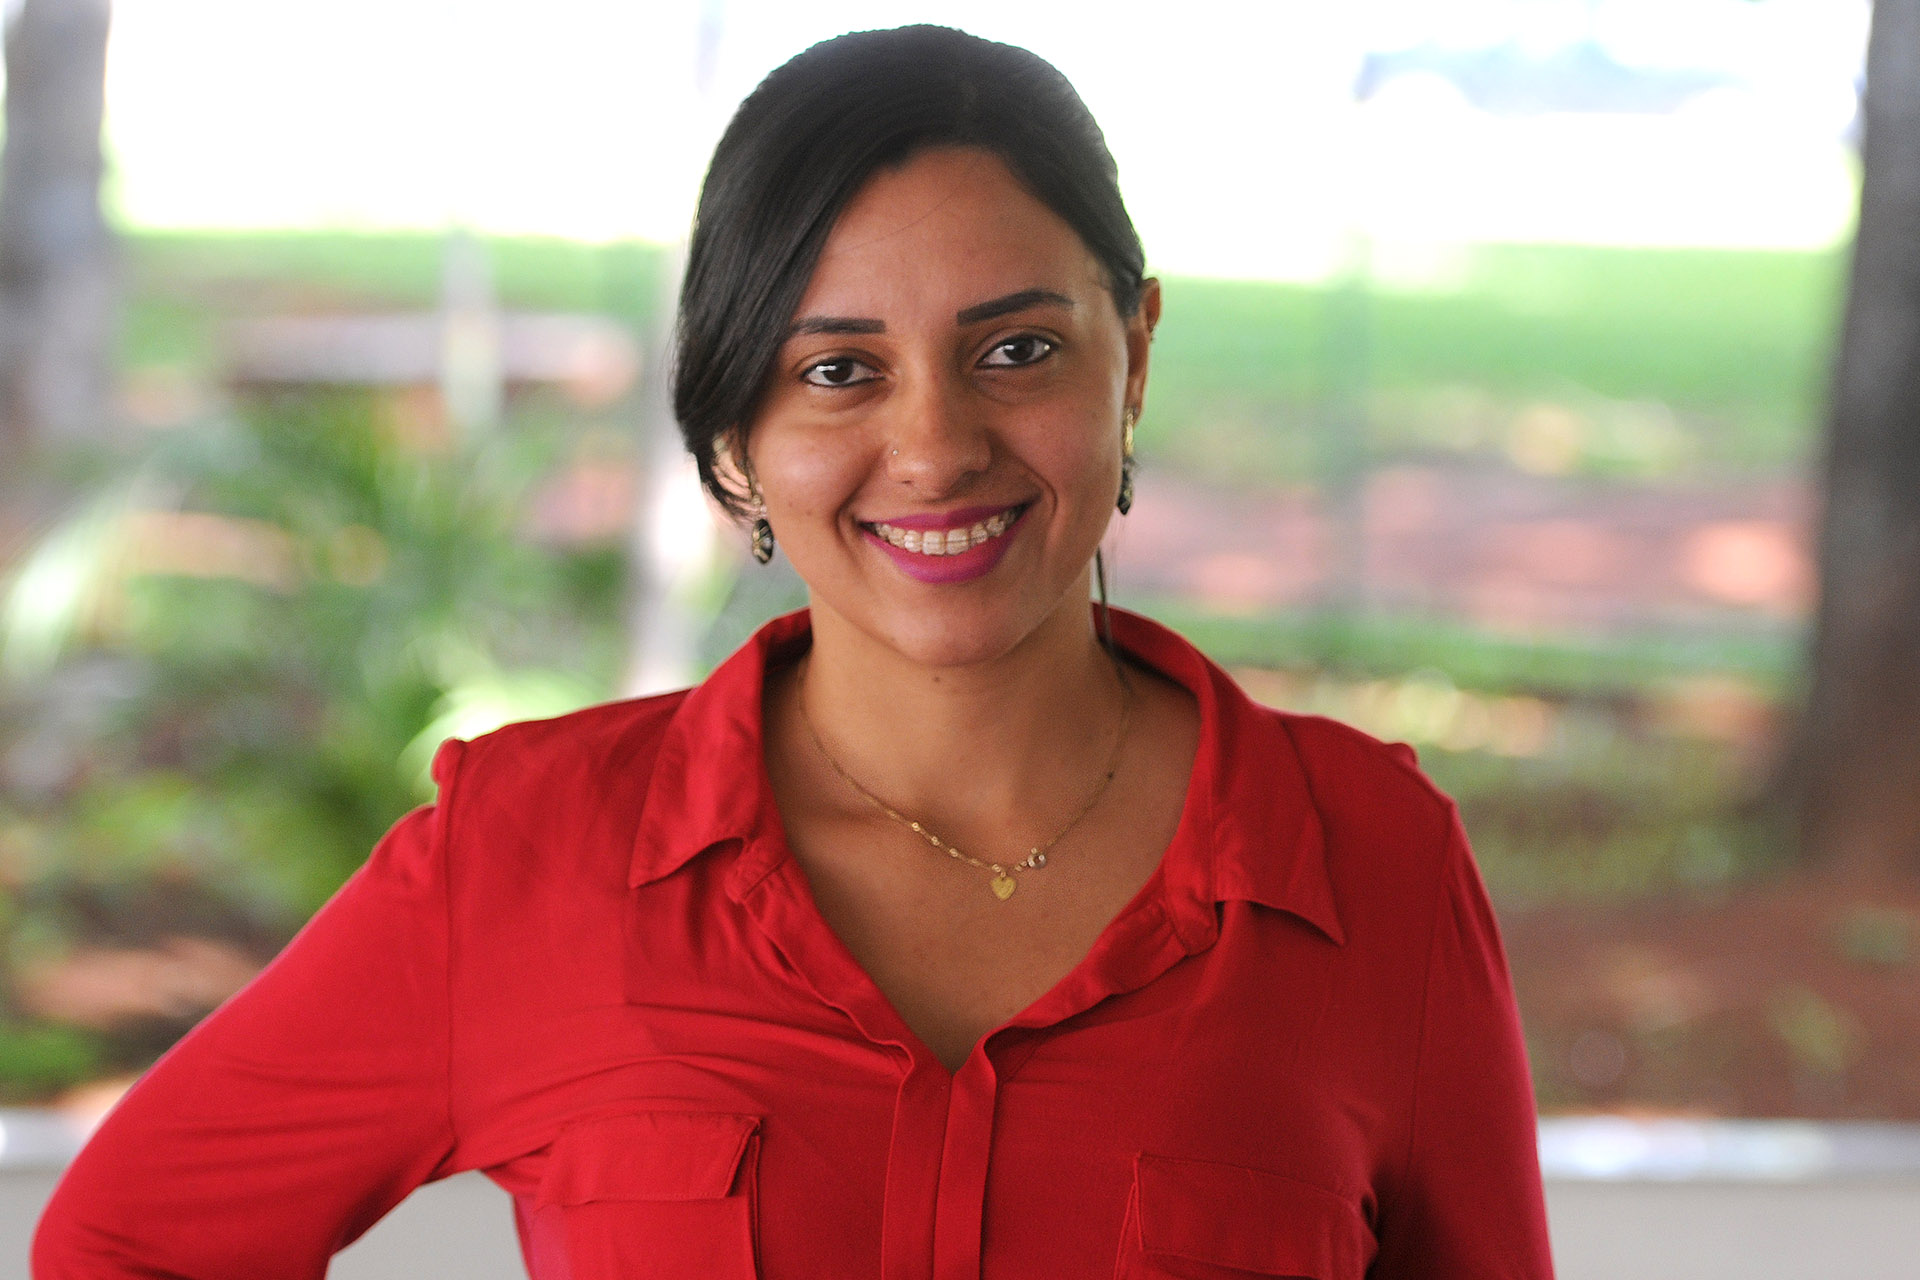 Formada em 2012, a enfermeira Luciana Caetana Borges, ainda não trabalhou na área. Enquanto procura emprego, decidiu doar tempo para a rede pública de saúde